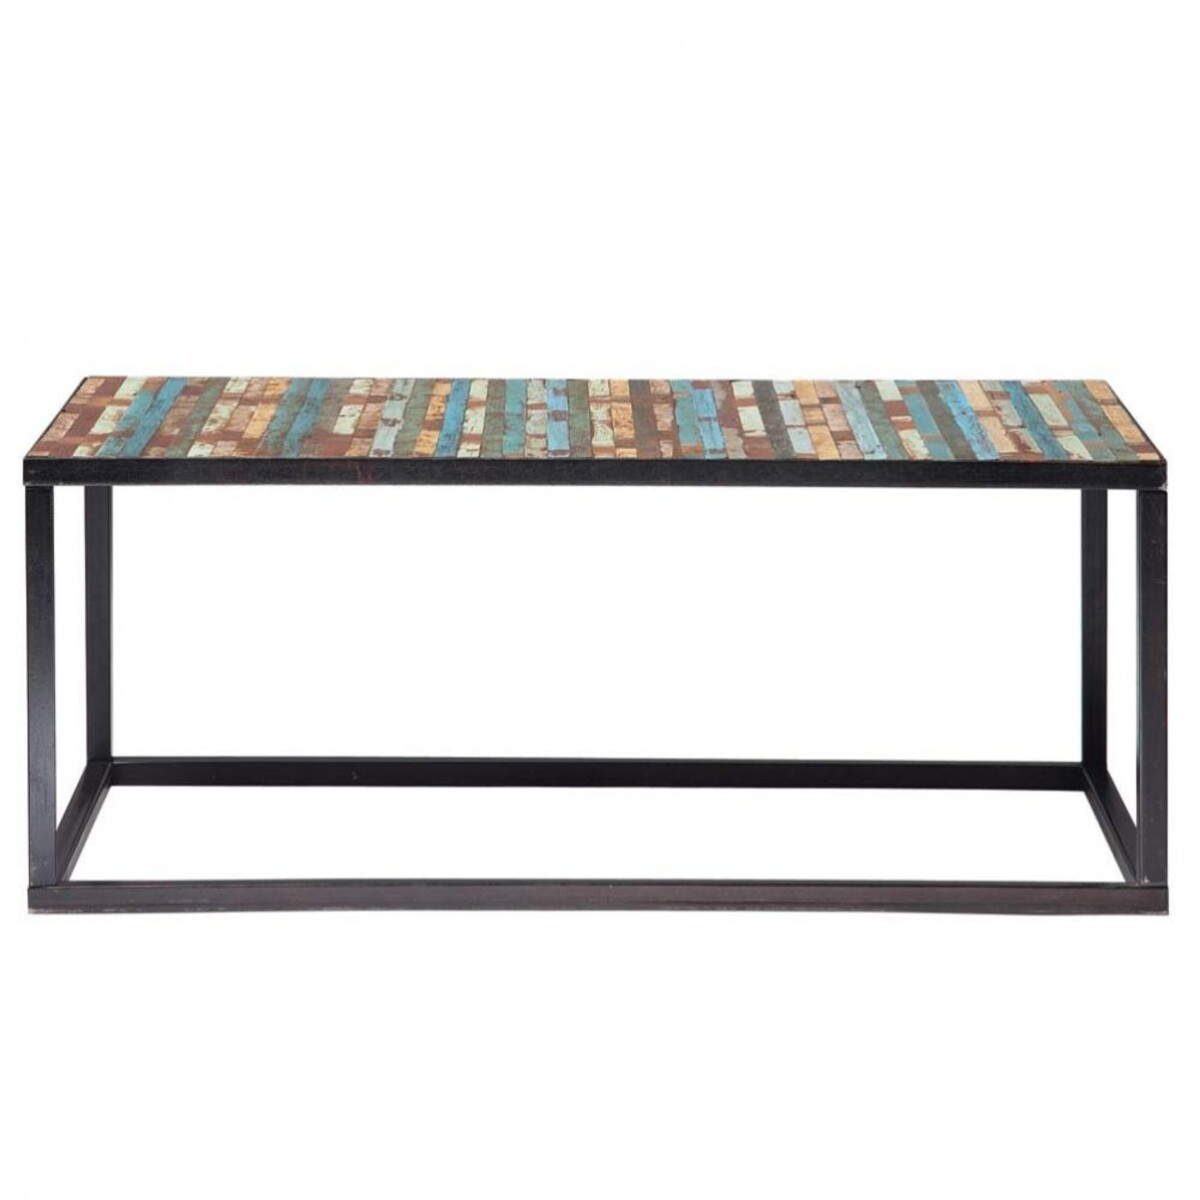 Table basse en bois et métal multicolore L 100 cm Bahia